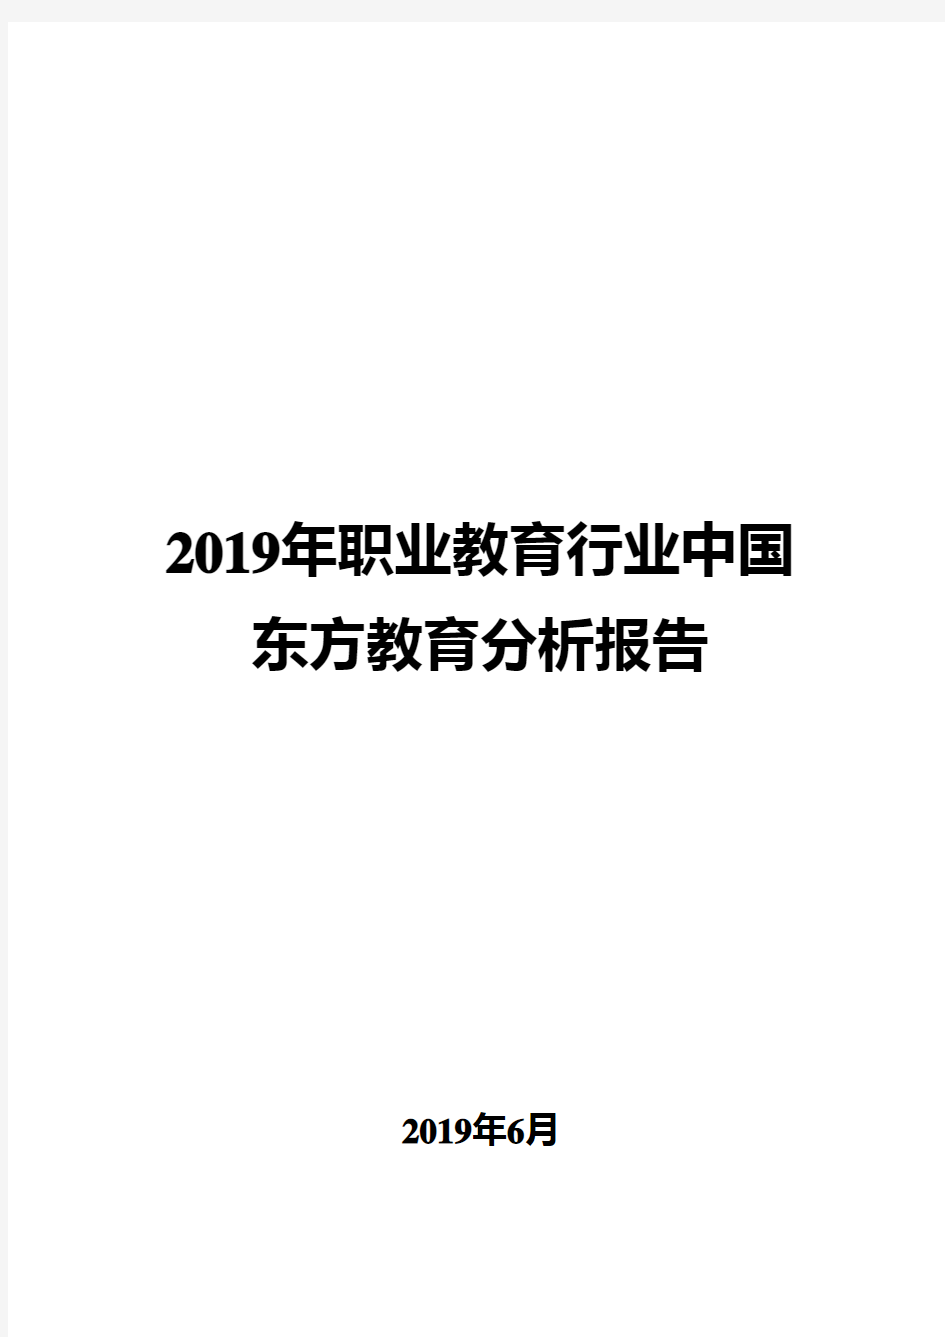 2019年职业教育行业中国东方教育分析报告